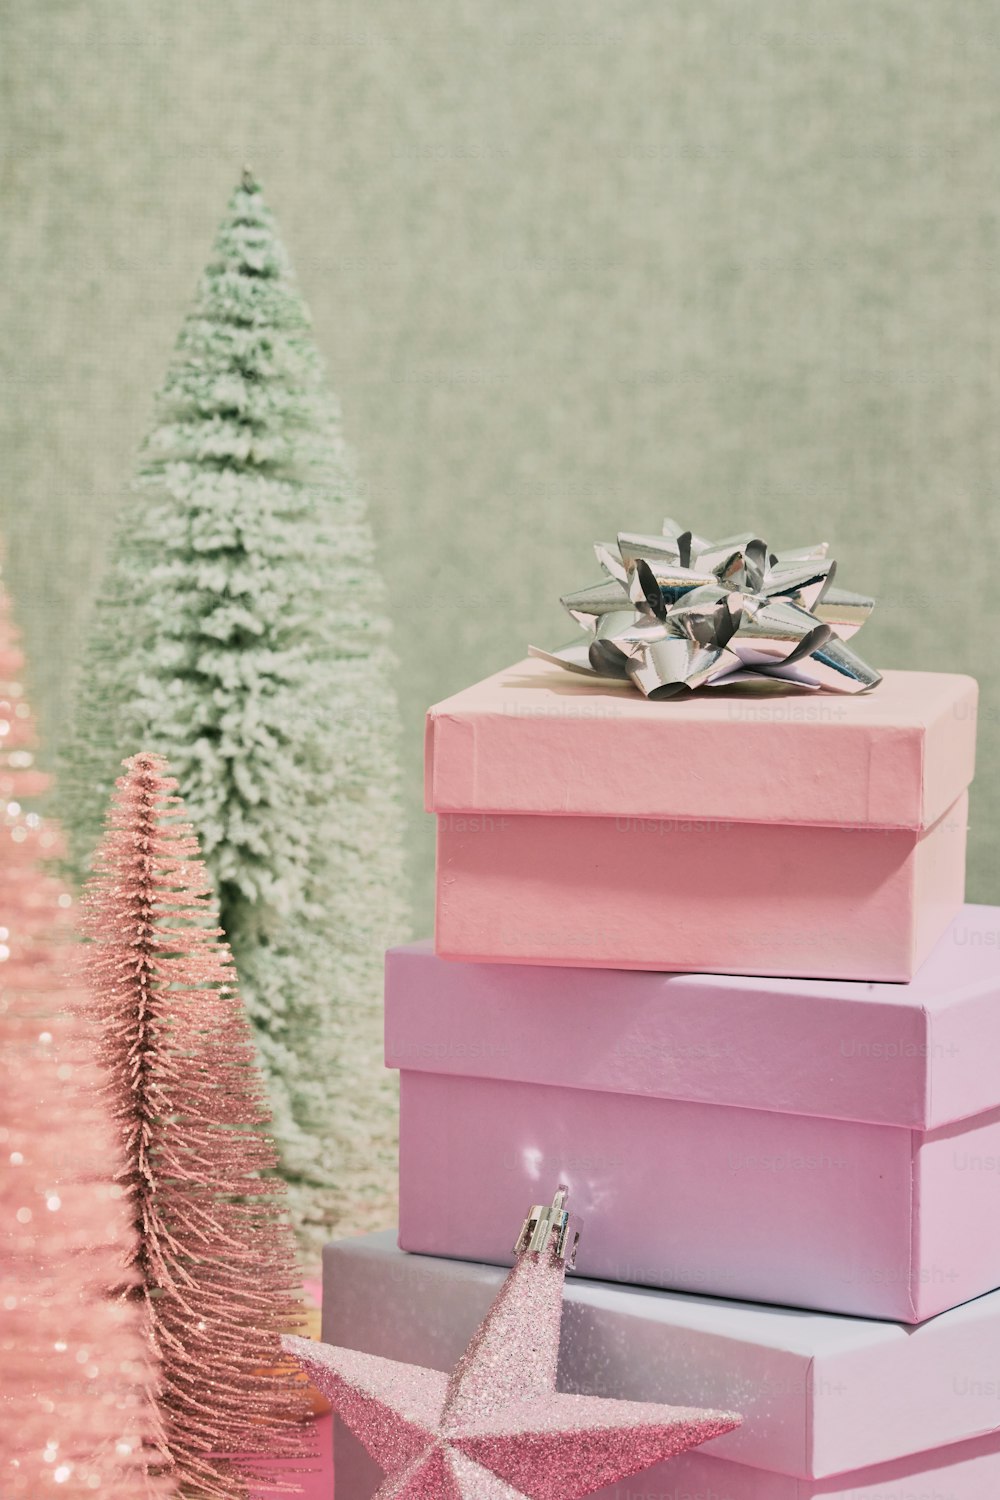 Ein Stapel rosafarbener Kartons neben einem Weihnachtsbaum